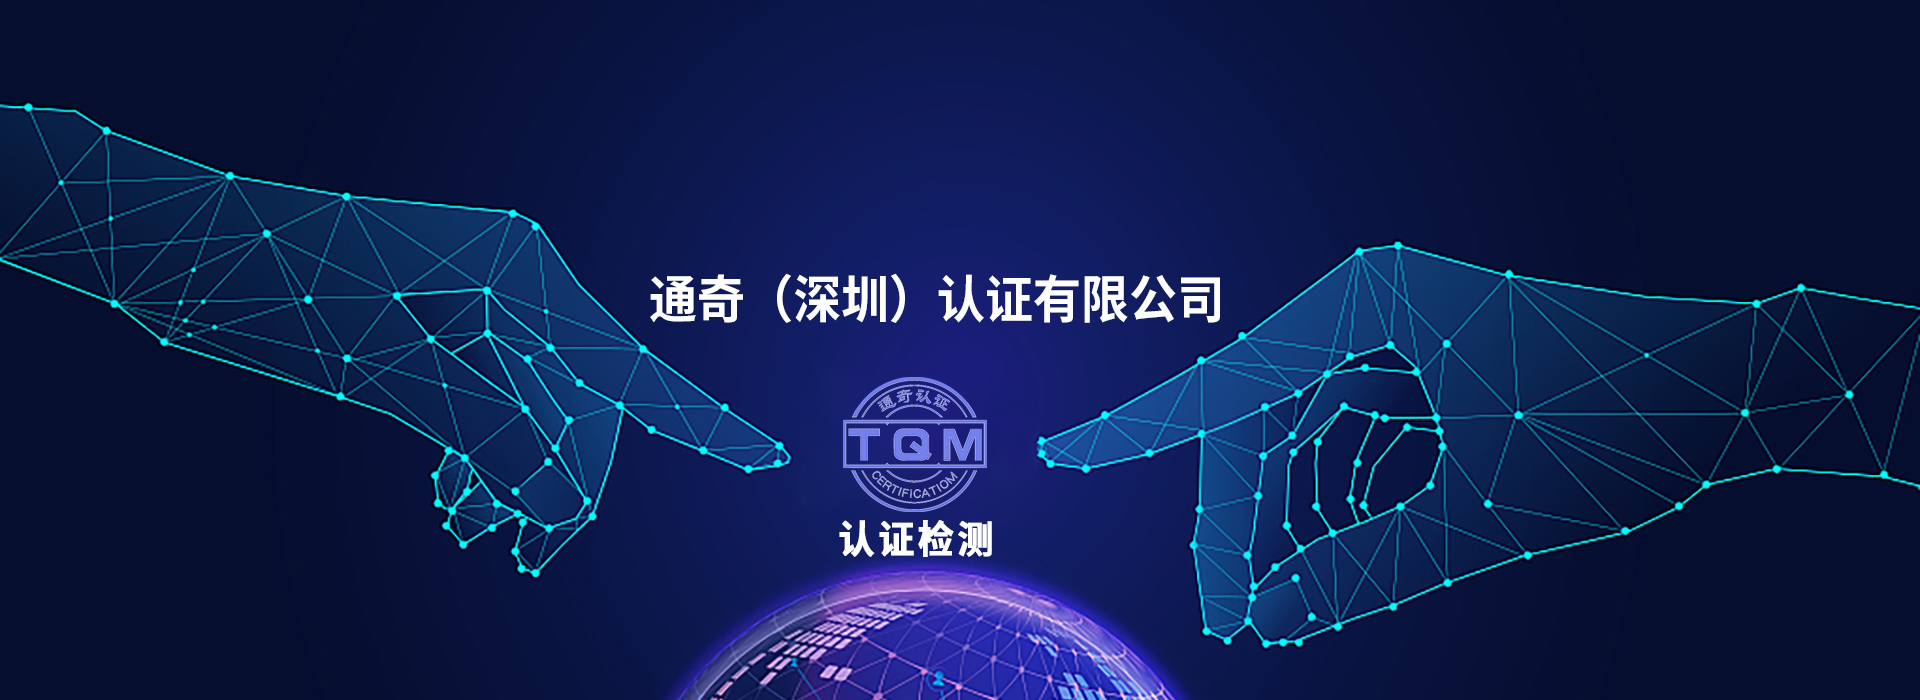 TQM认证,UL黄卡认证,认证检测